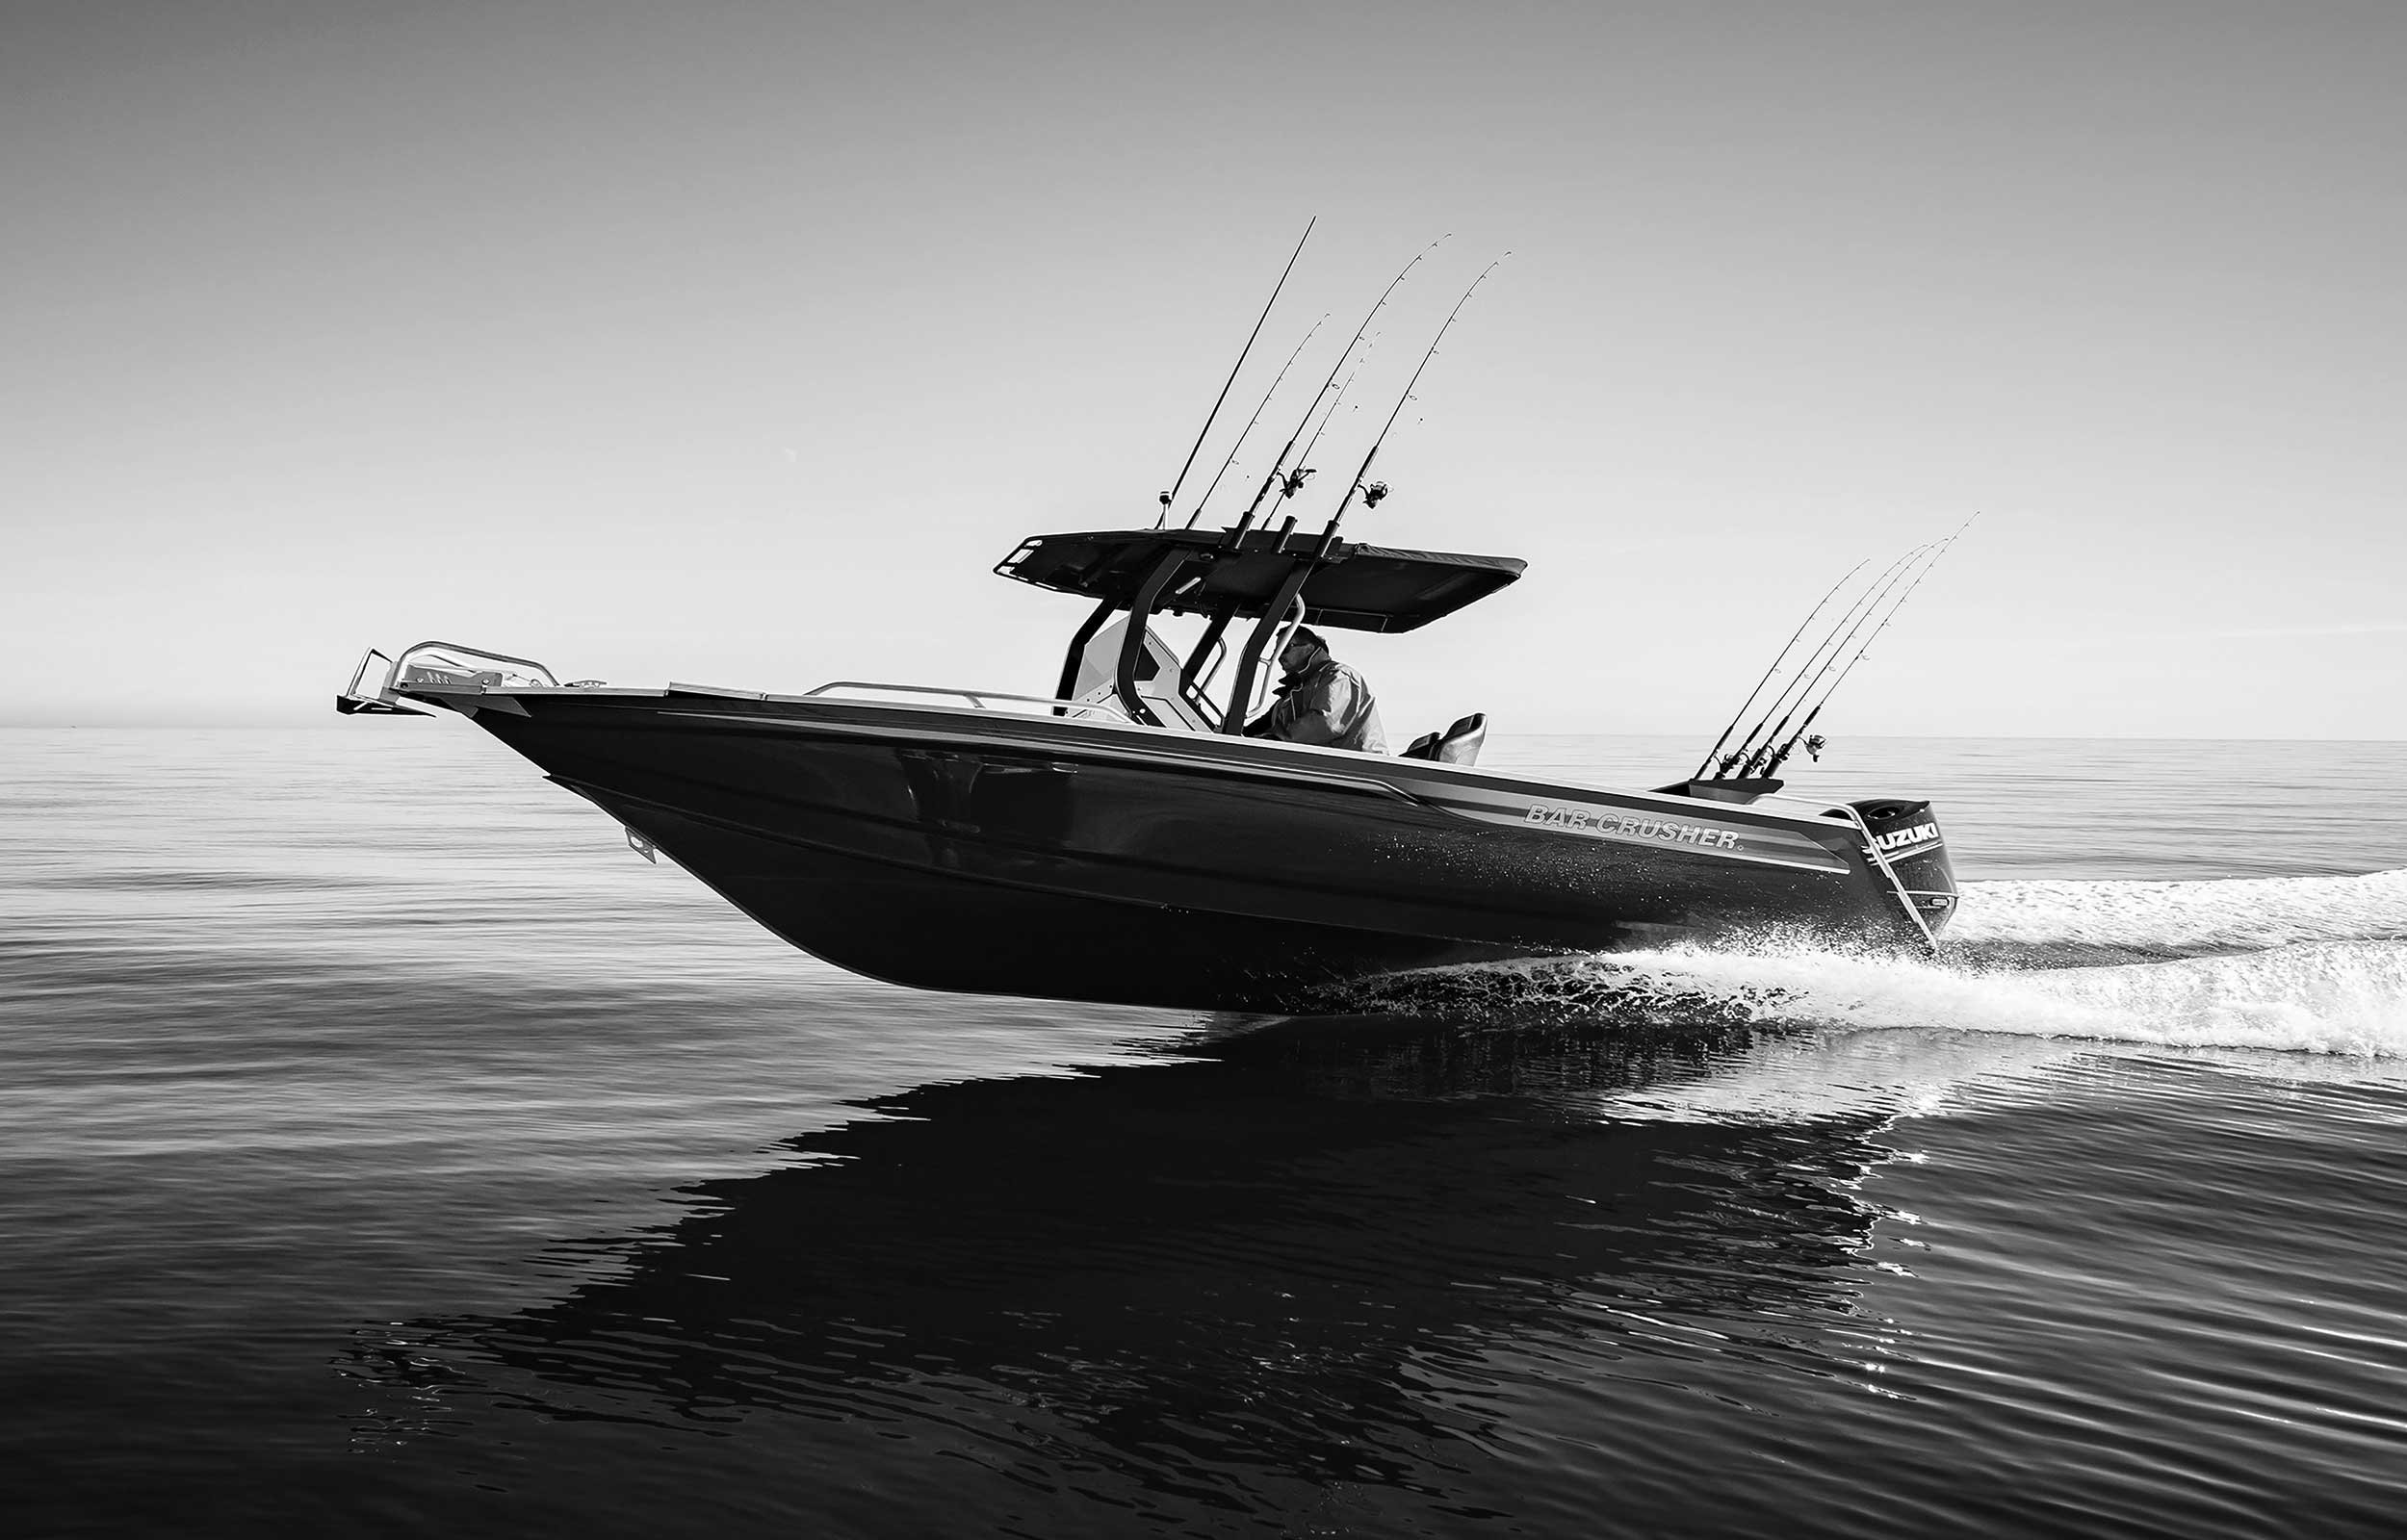 models-bar-crusher-780xt-plate-aluminium-fishing-boat-2019-web-1-1